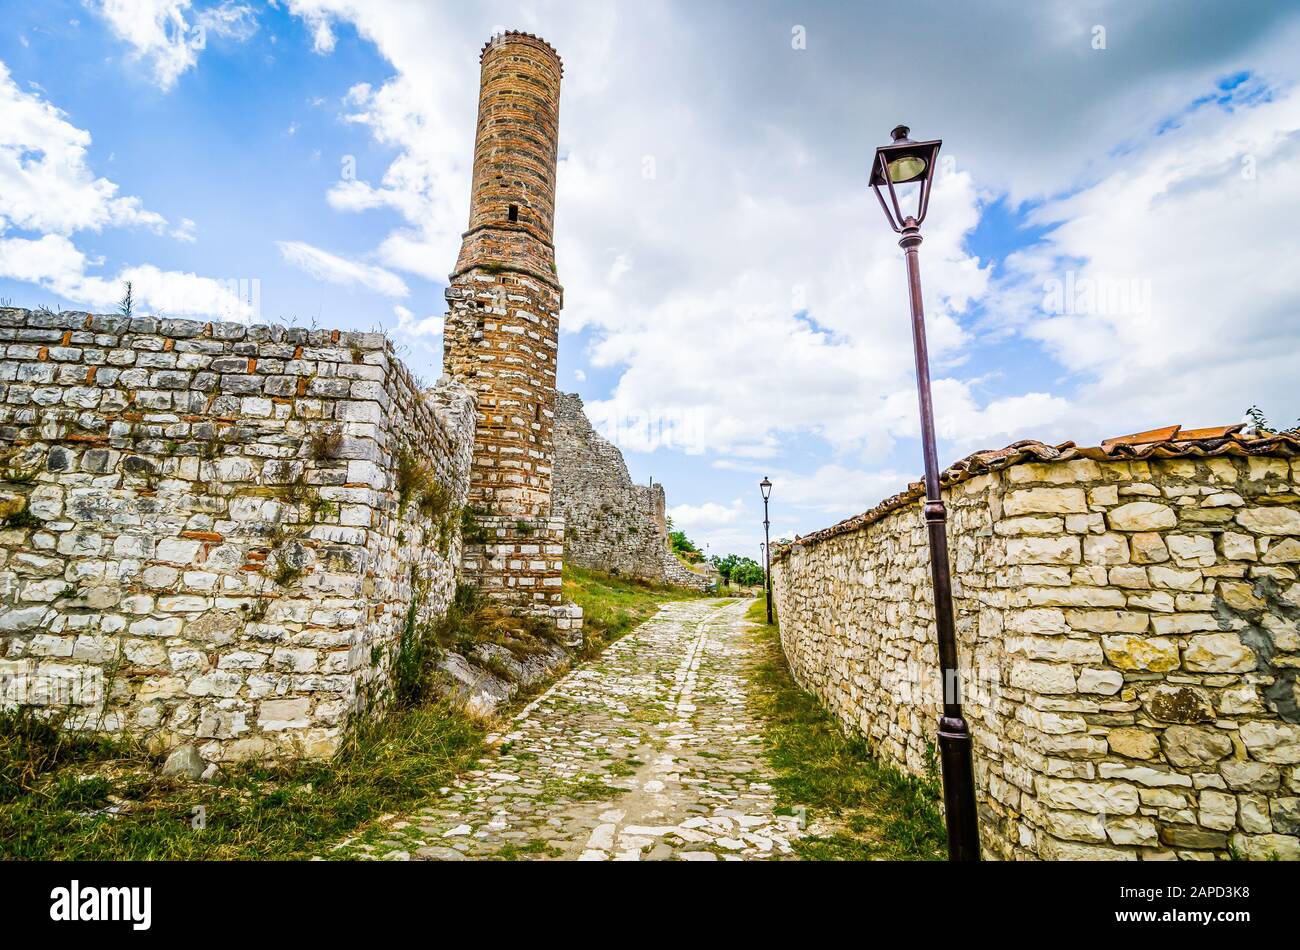 Kalaja e Beratit - Cittadella di Berat e quartiere del castello, è una fortezza che domina la città di Berat, Albania Foto Stock